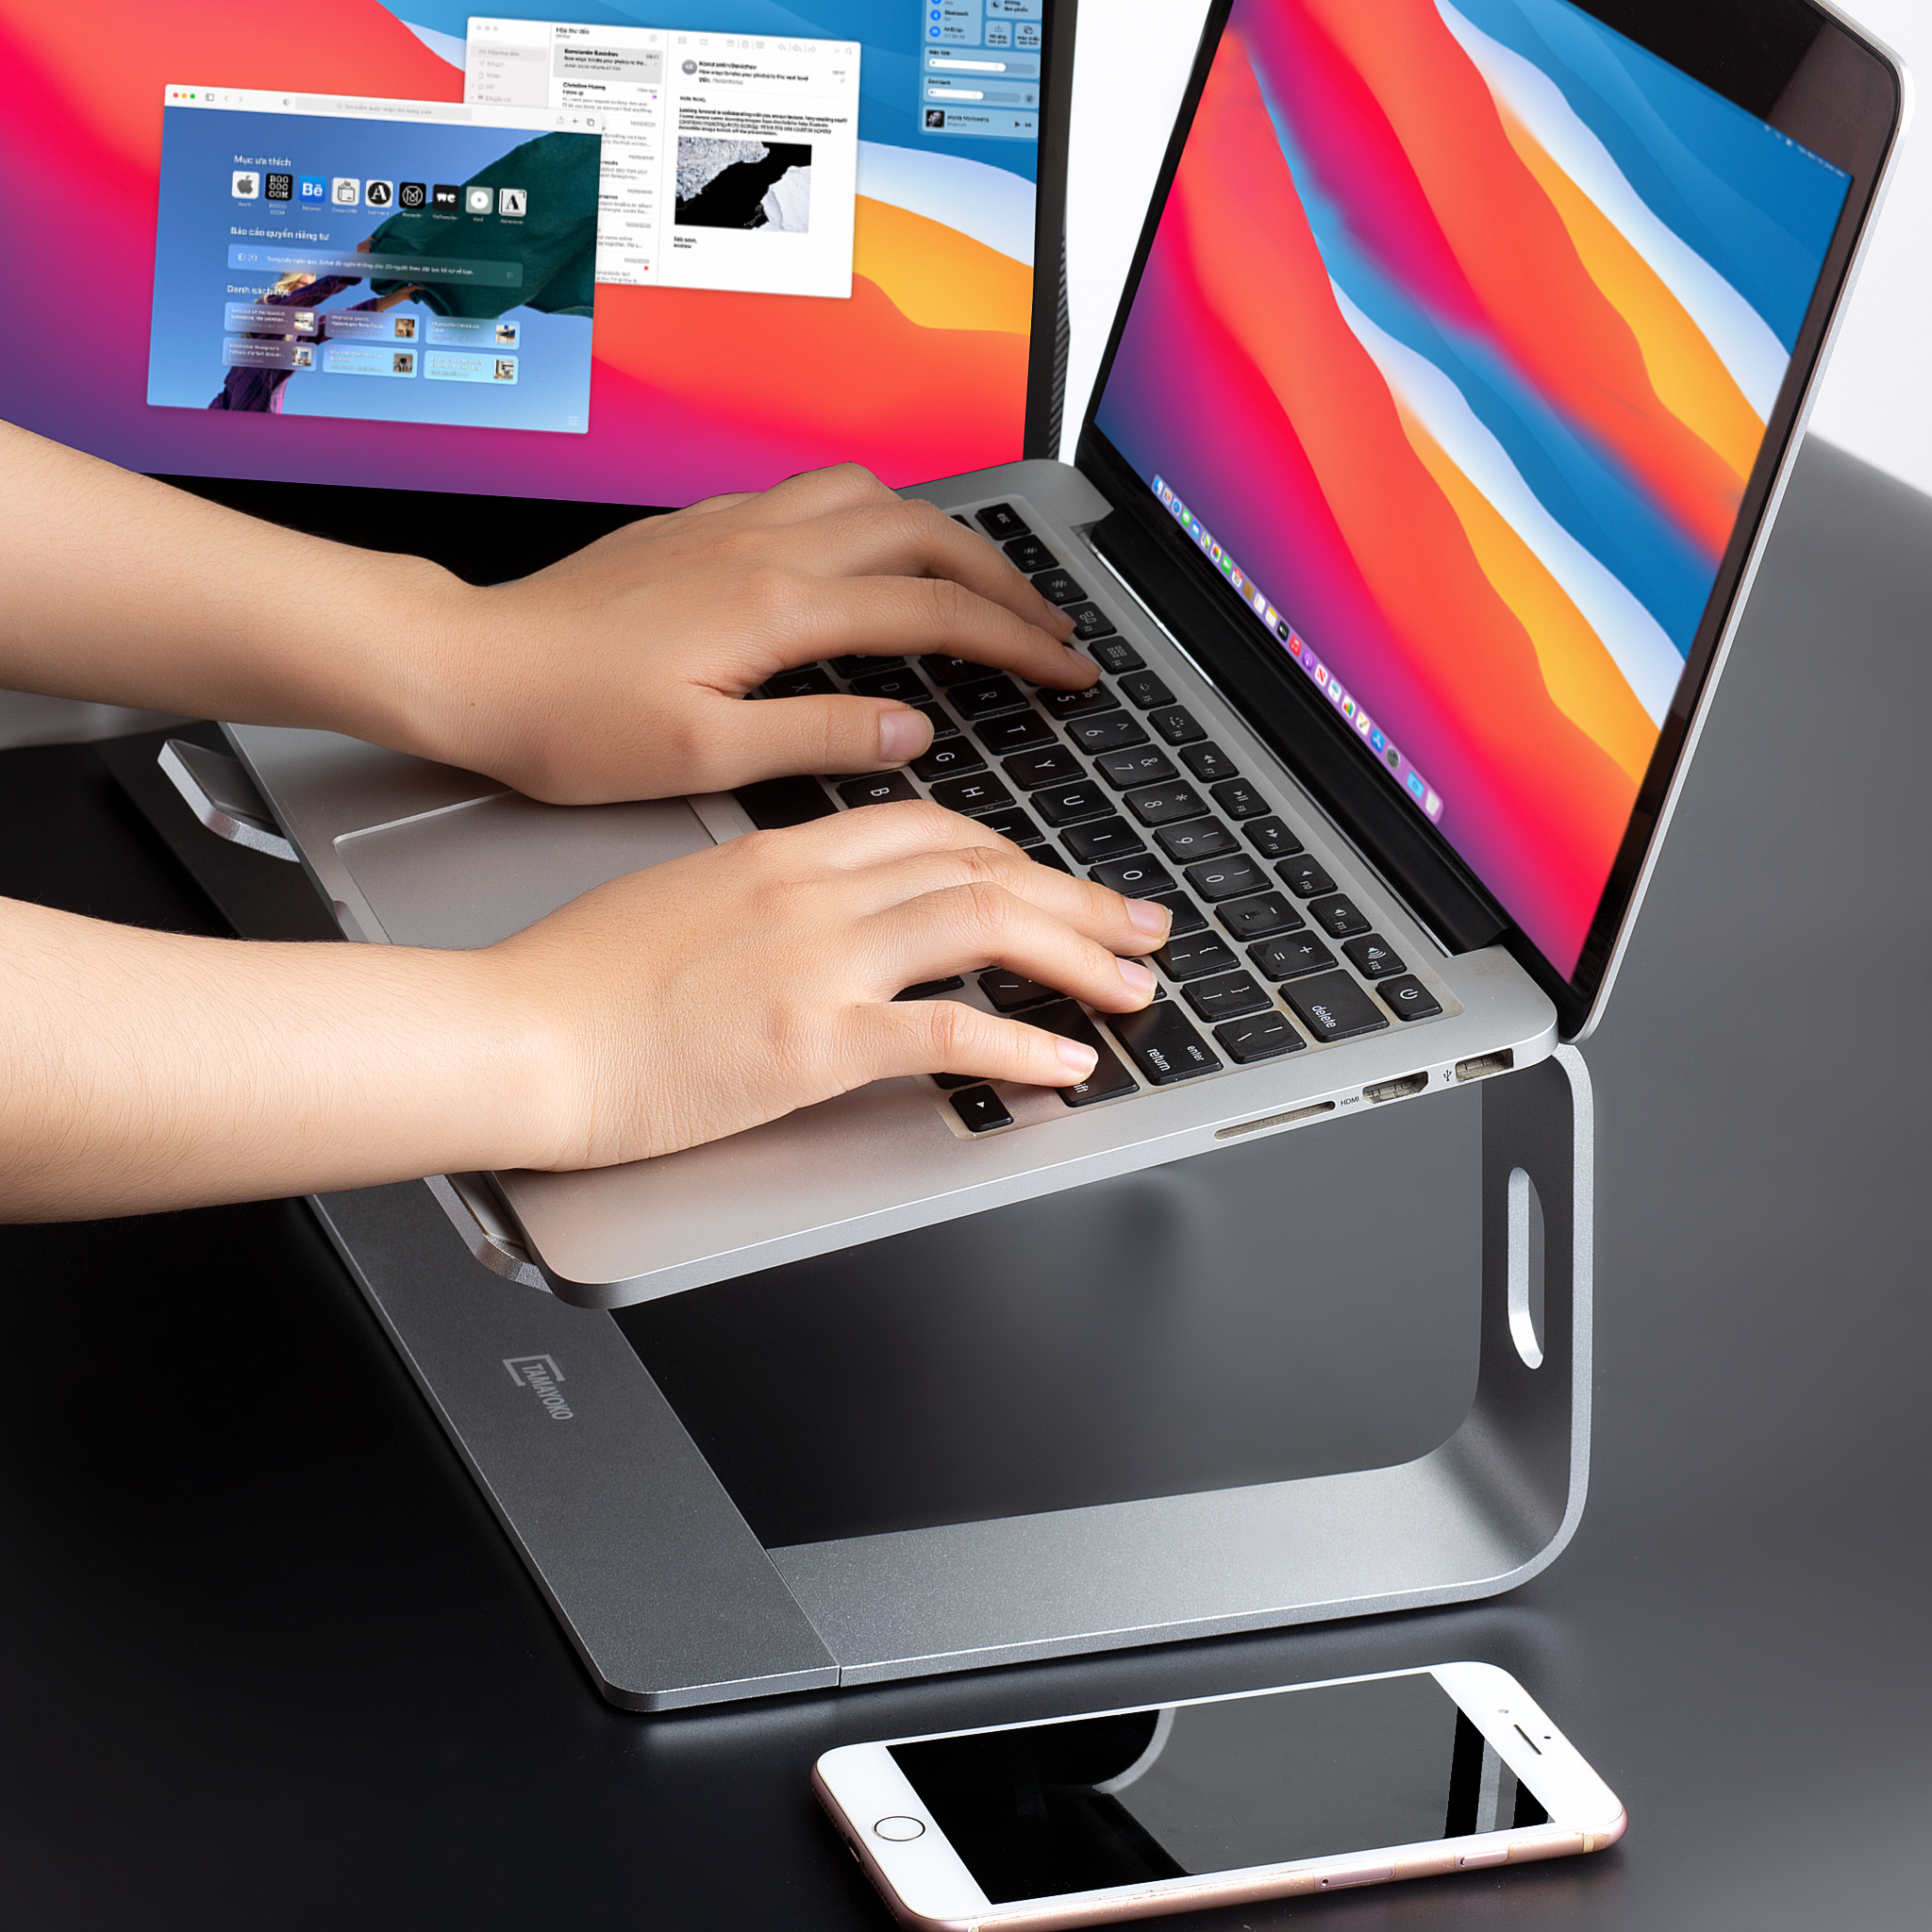 Giá Đỡ Máy Tính Laptop Macbook Besti BTY01 Hợp Kim Nhôm Cao Cấp Giúp Tản Nhiệt Có Thể Tháo Rời - Hàng Chính Hãng 